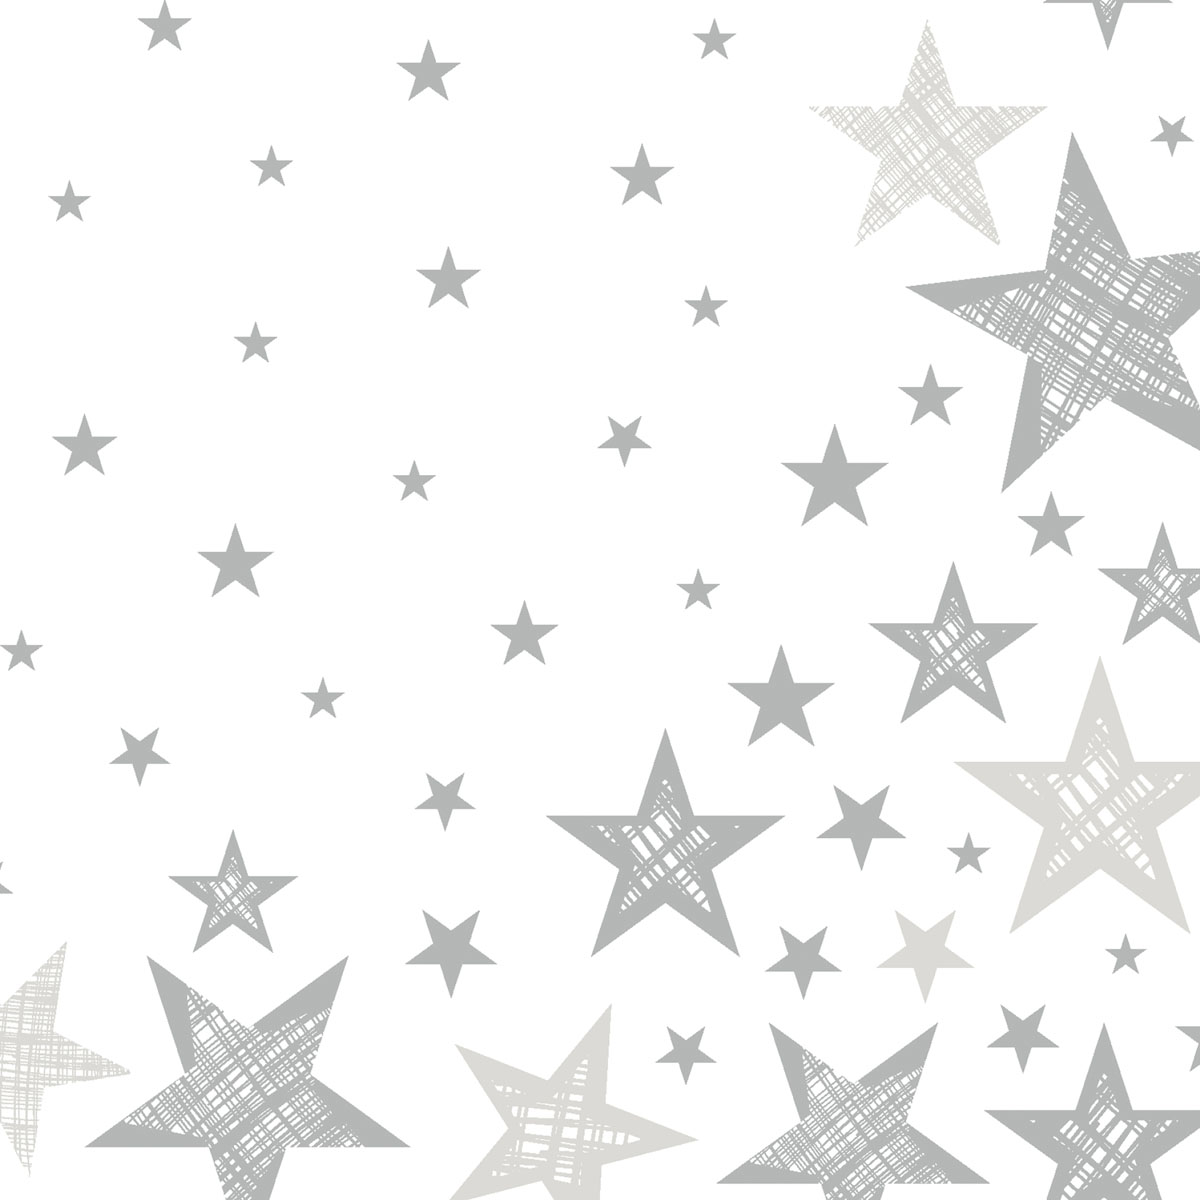 Ubrousky bílé s hvězdami 20 ks 3-vrstvé 33 cm x 33 cm Shining Star White